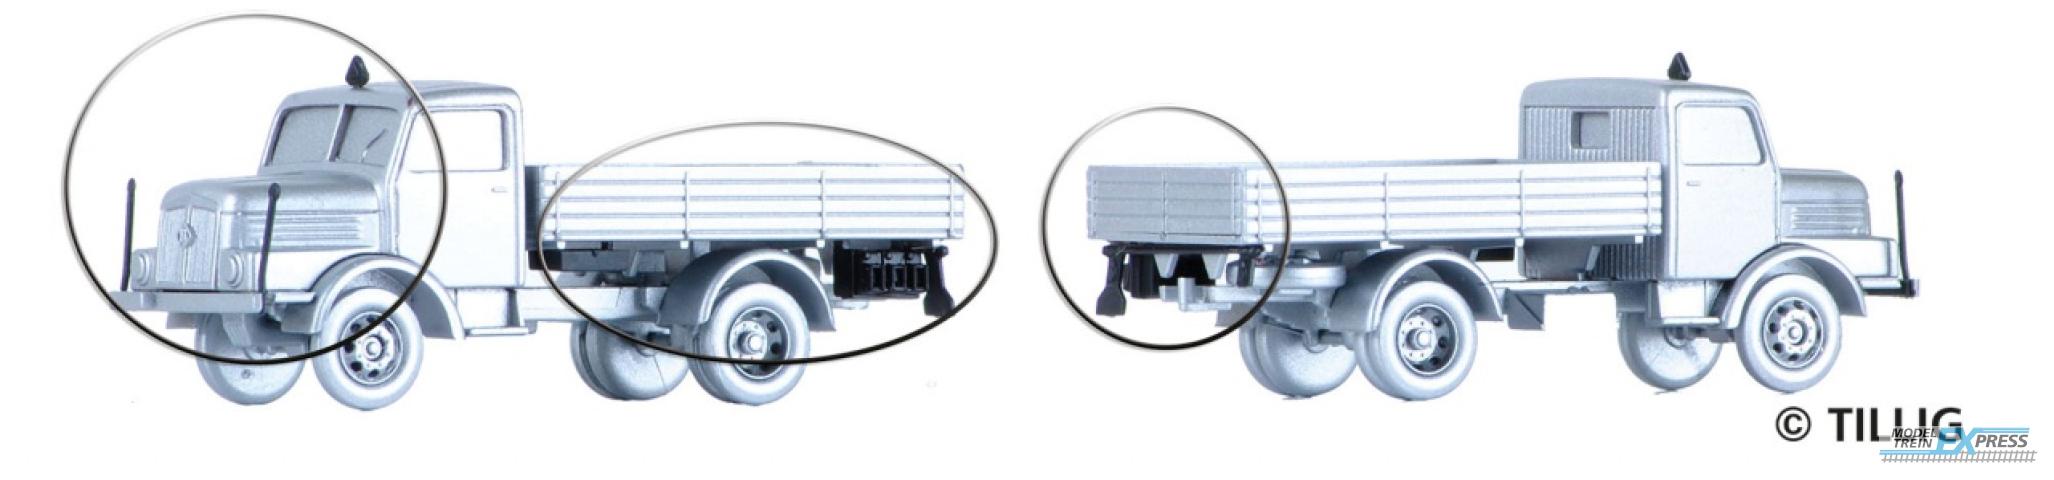 Tillig 7800 Zurüstsatz für LKW H3A für zwei LKW